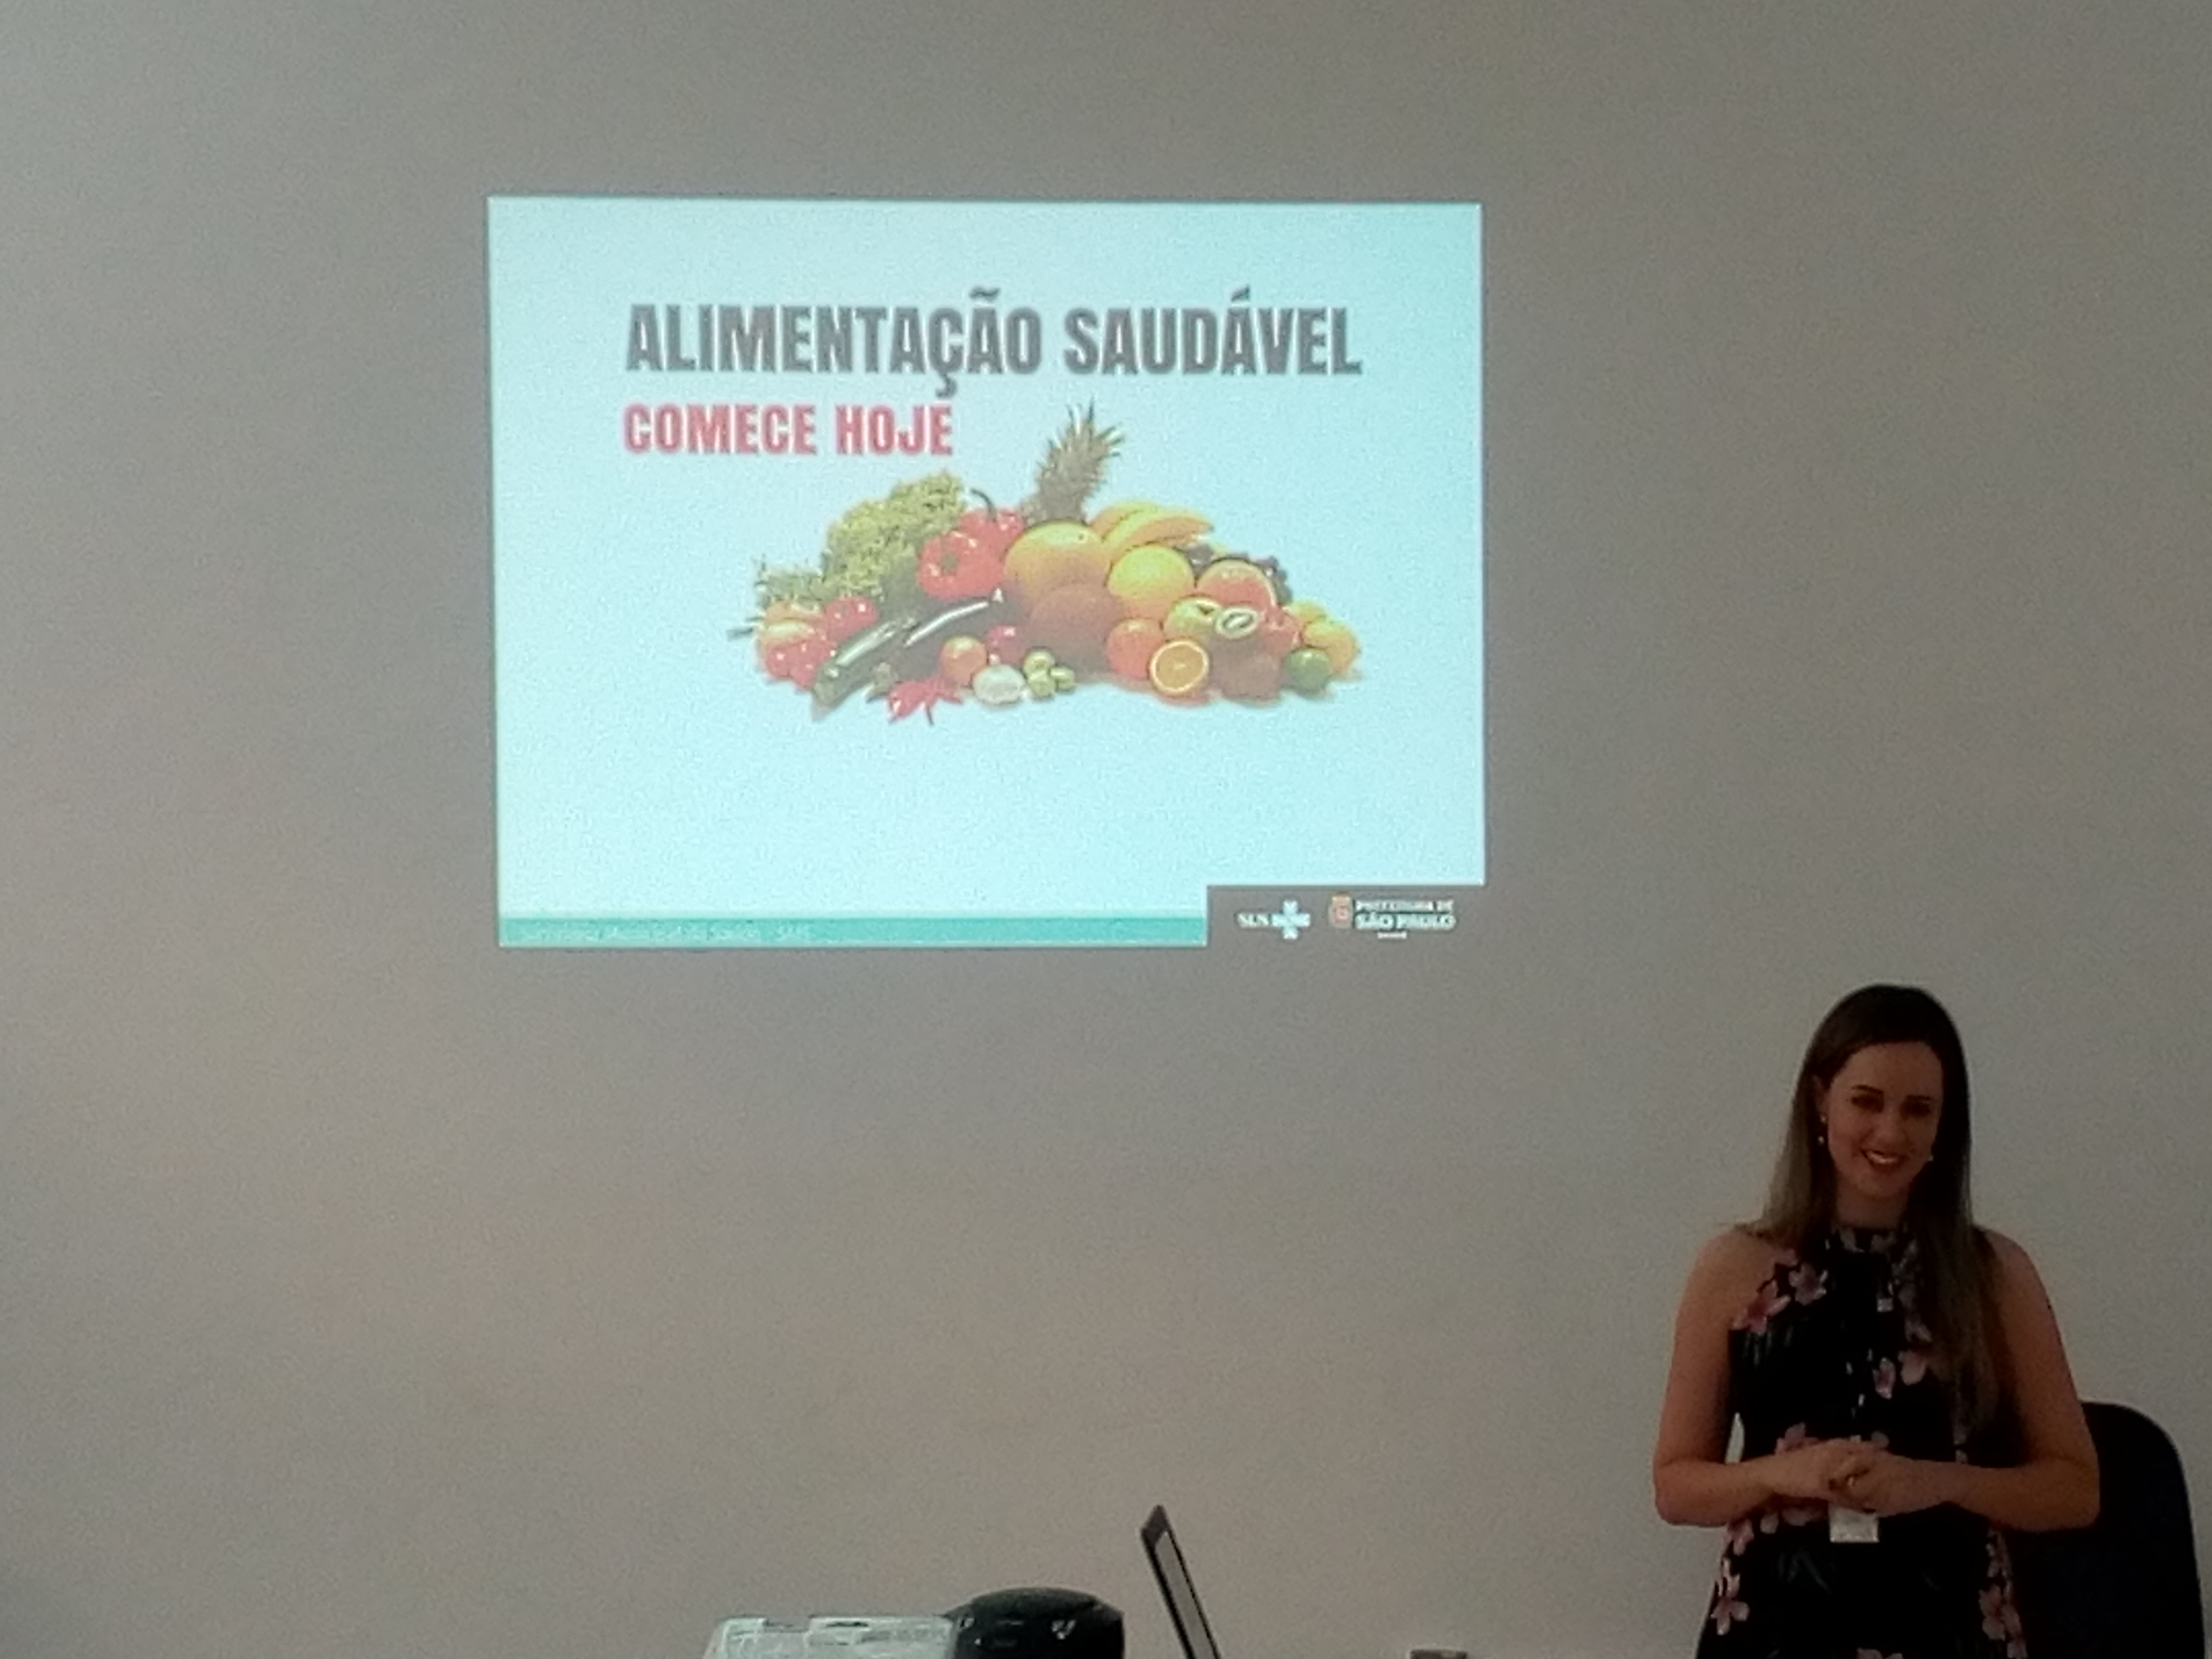 #Paracegover Na imagem; ao fundo, na parede, um projetor reflete um Slide que está escrito Alimentação Saudável Comece hoje, ao lado do slide está a palestrante.